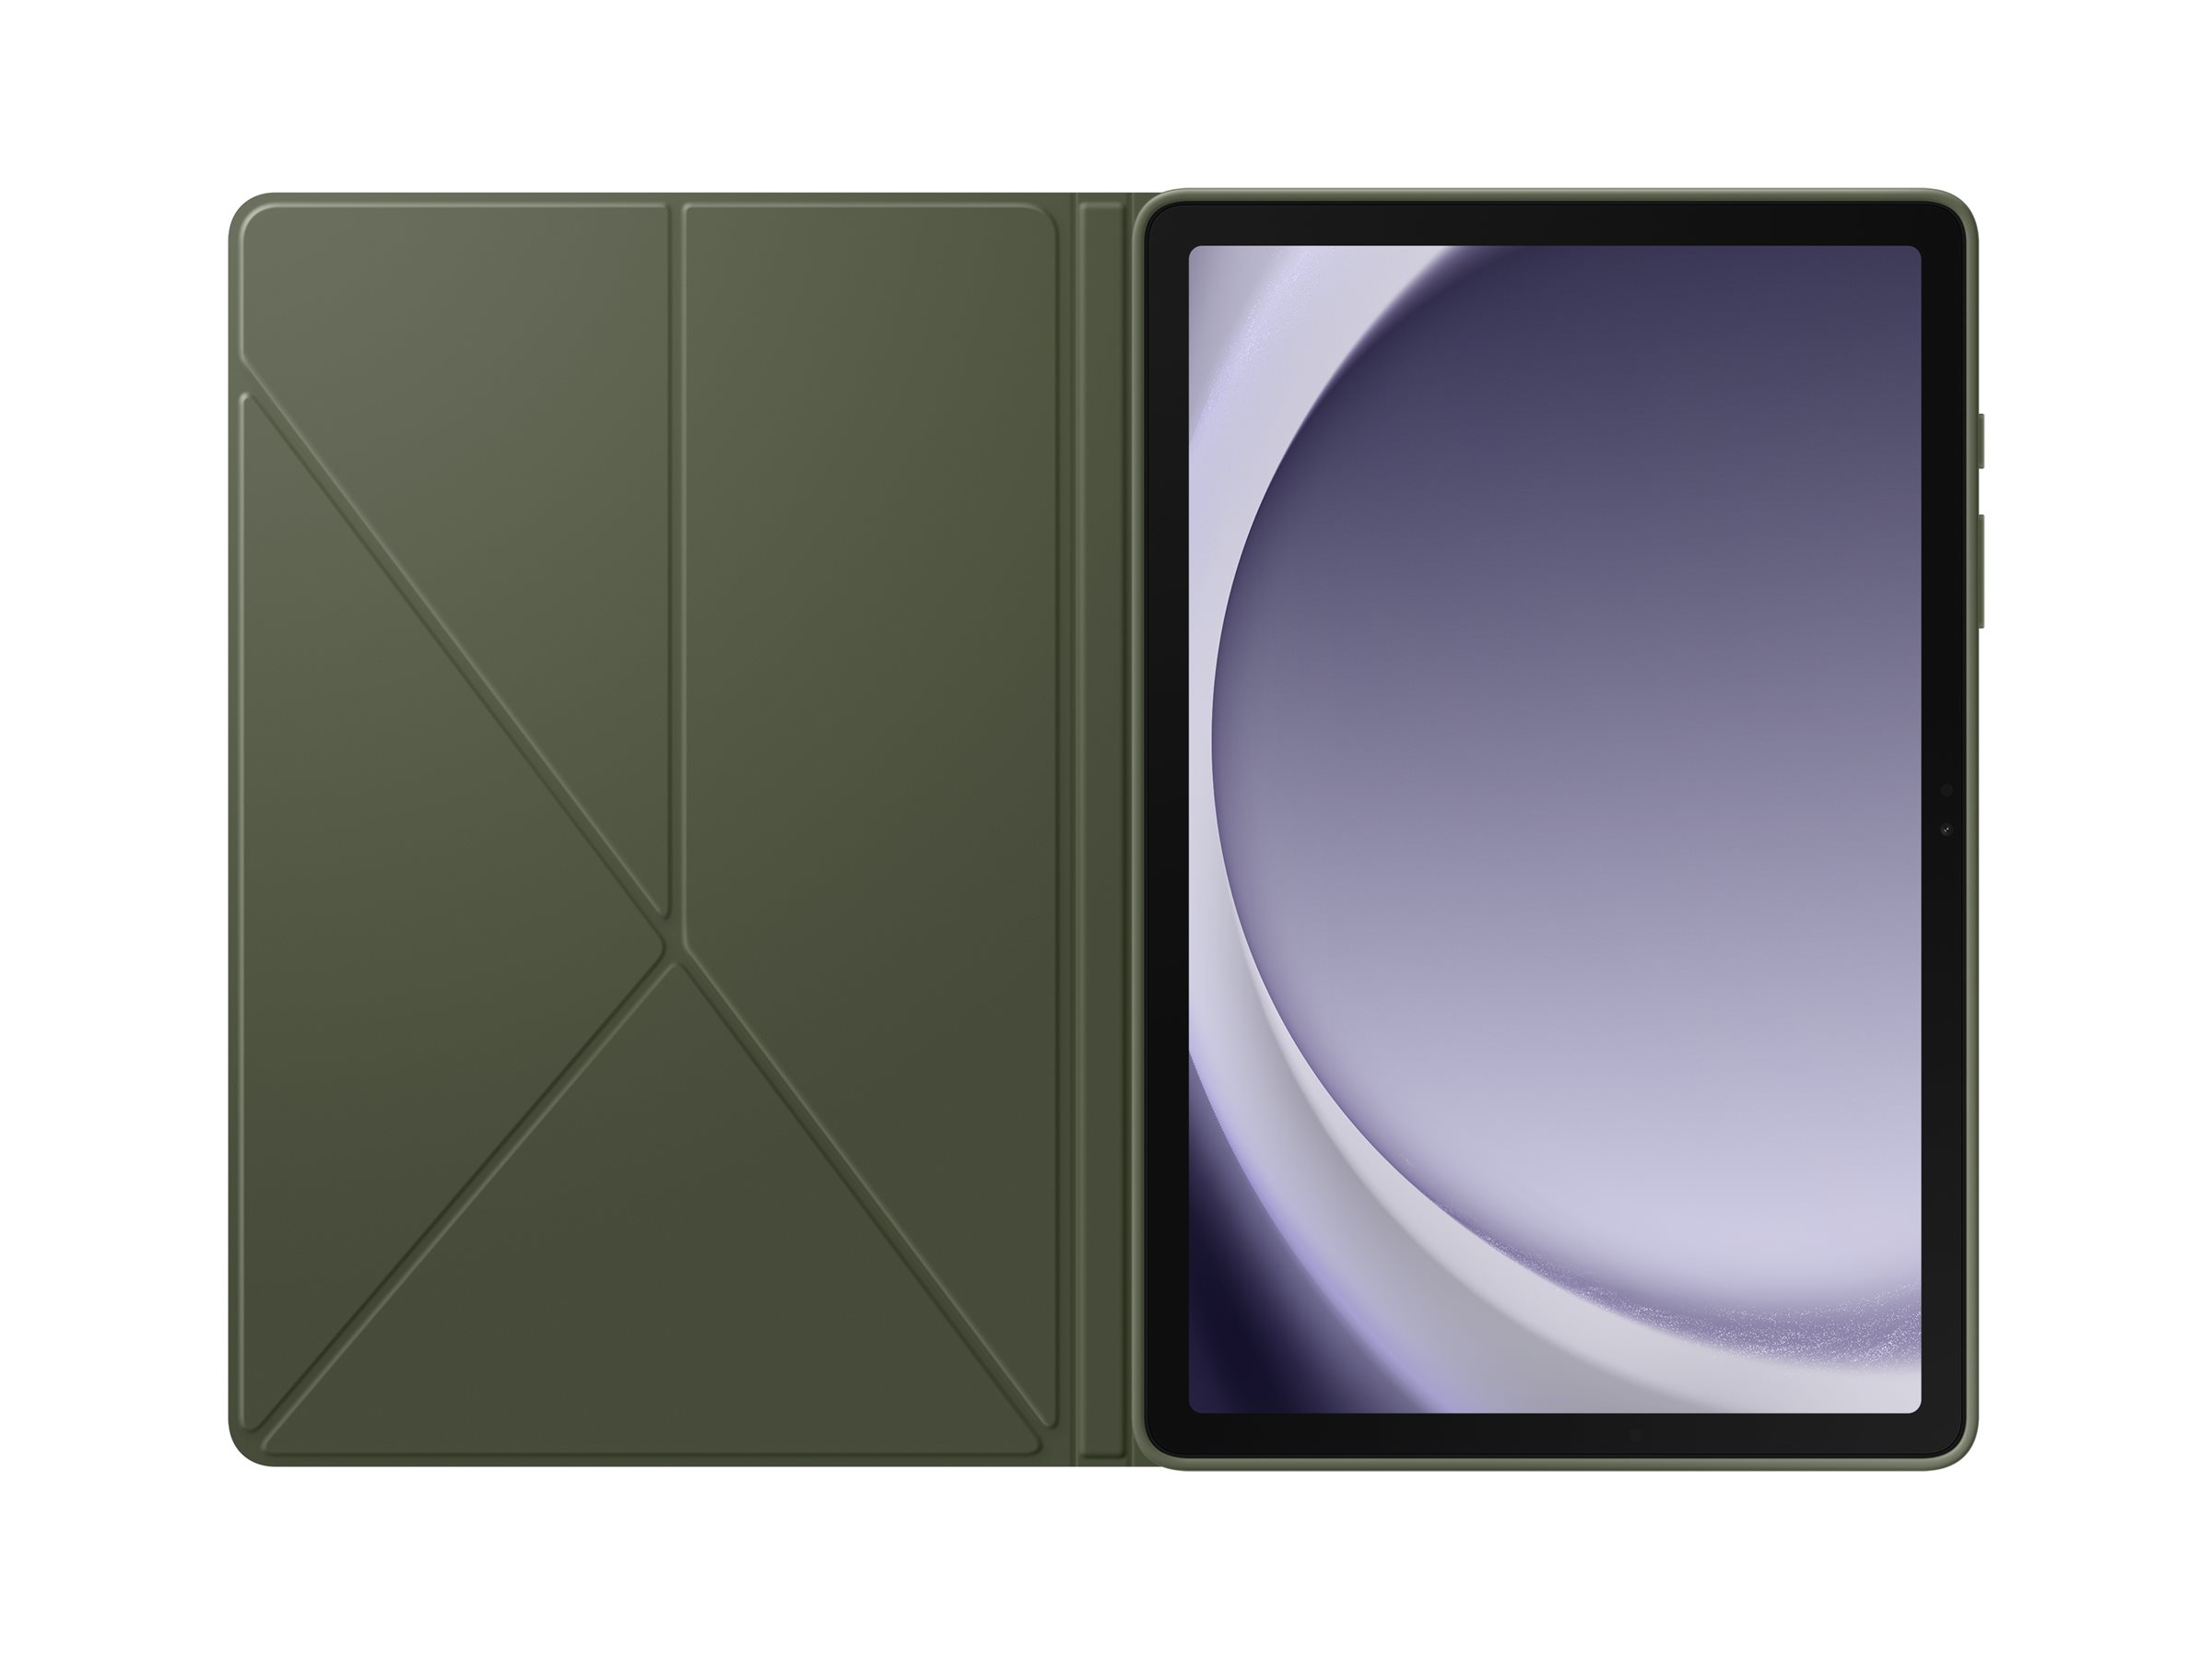 Samsung EF-BX210 Flip Cover for Galaxy Tab A9+ - Black